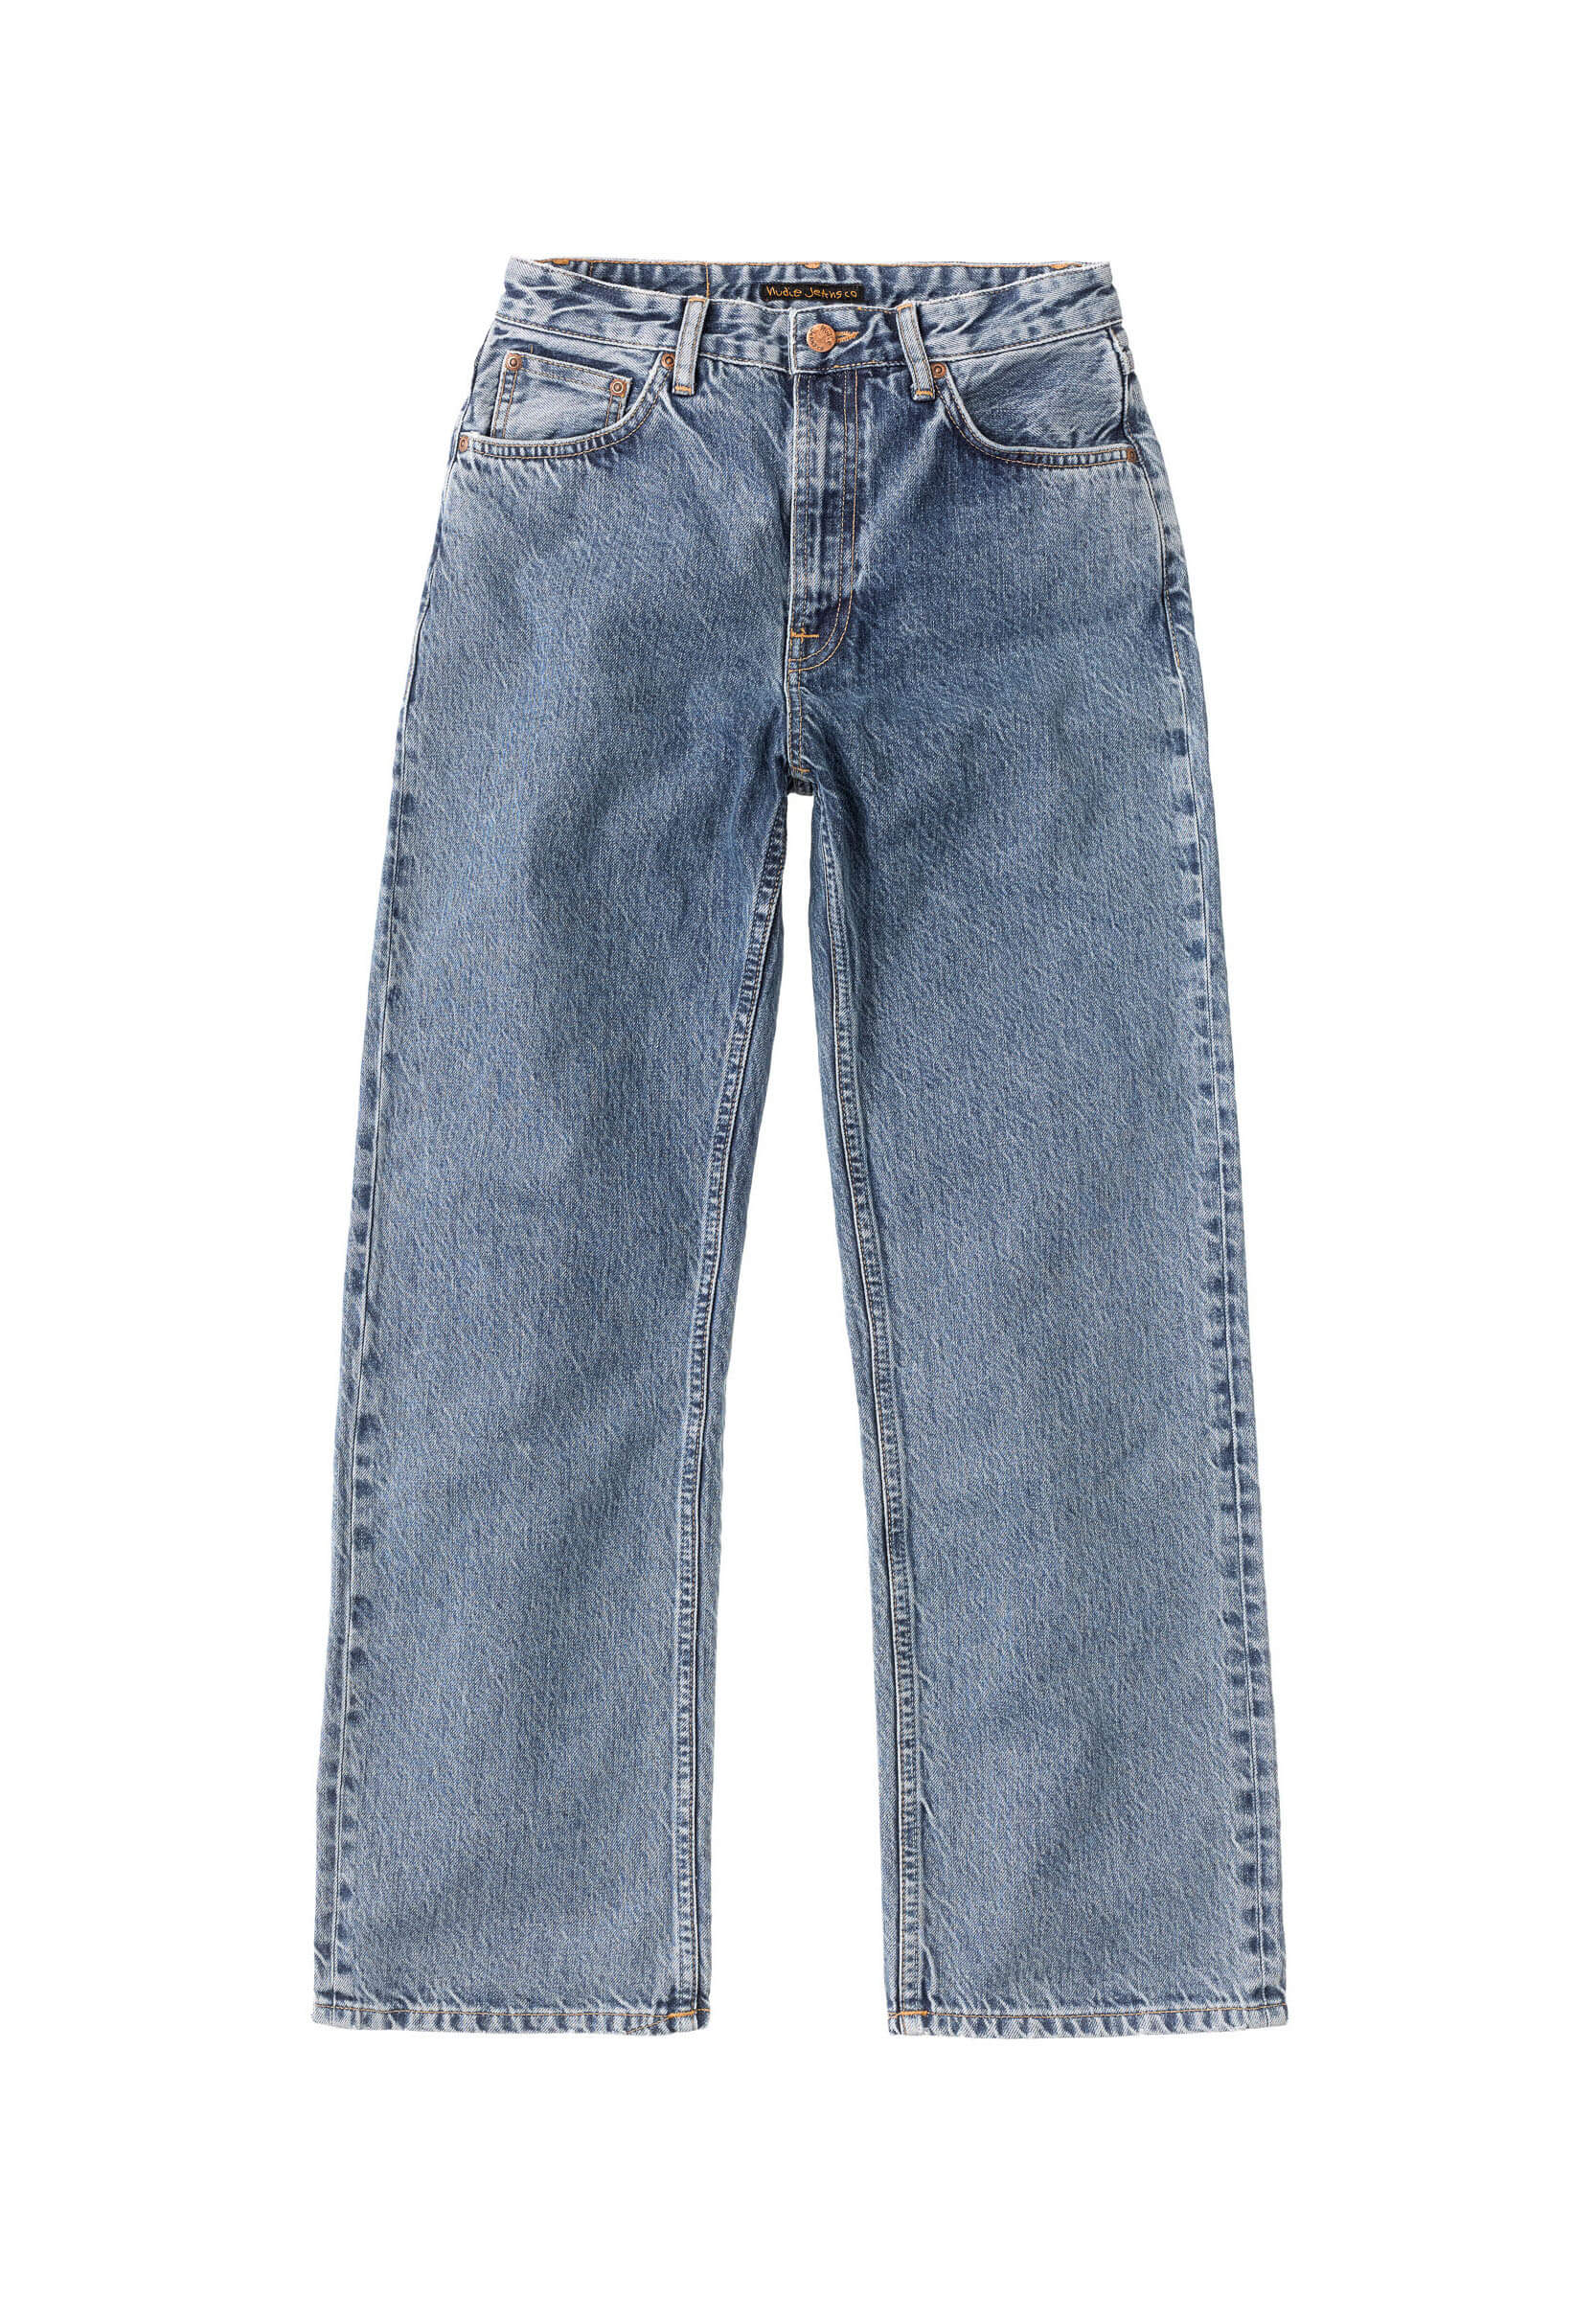 NUDIE JEANS Jeans Clean Eileen gentle fade 29/30